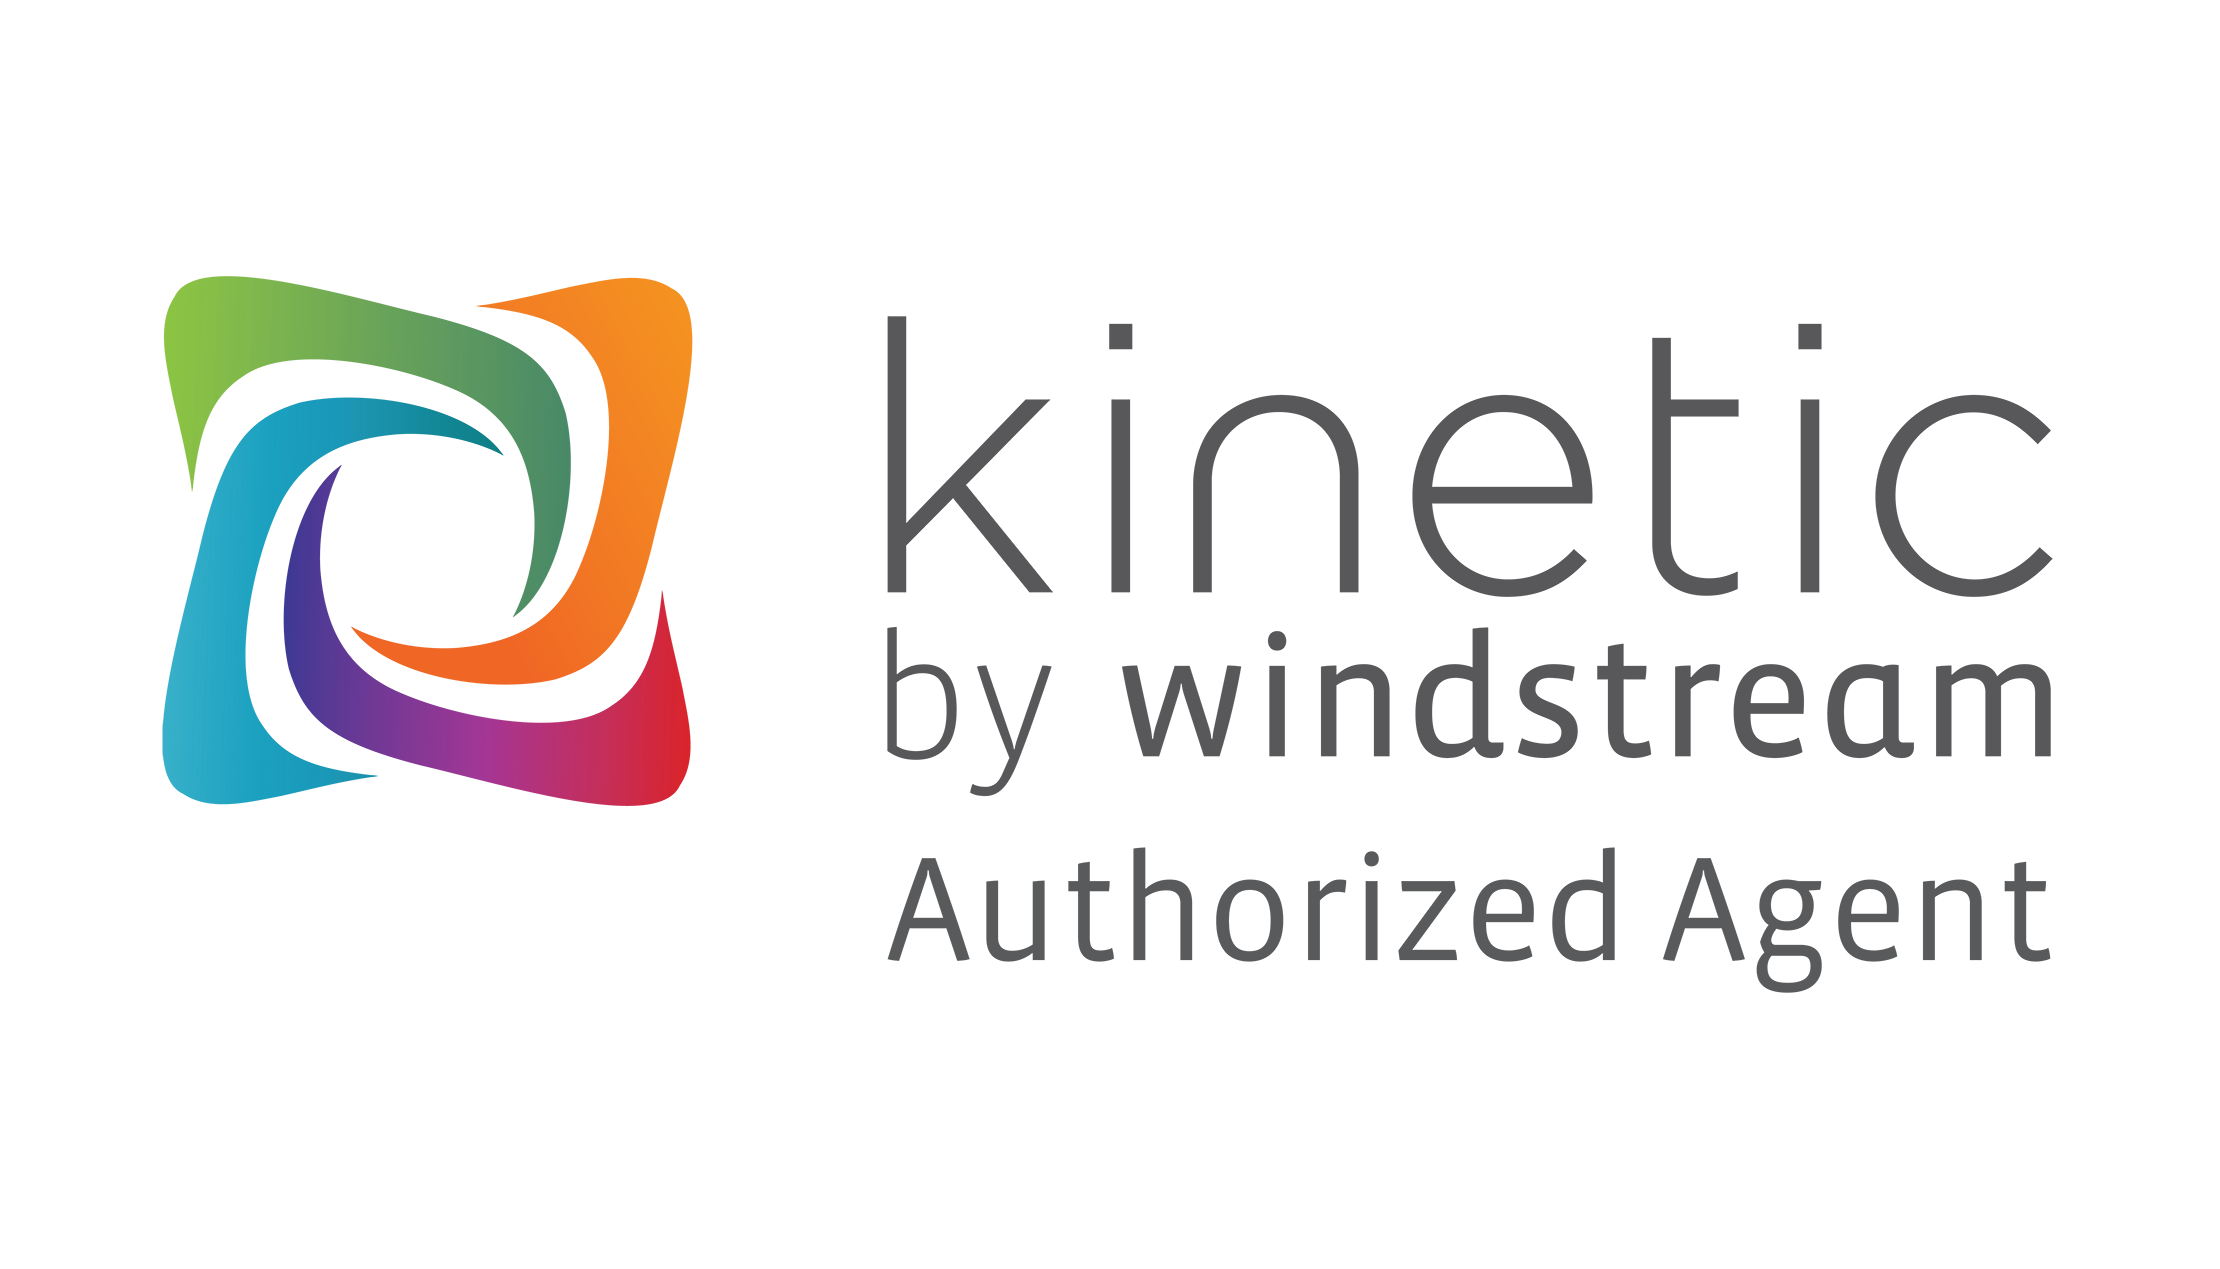 Kinetic by Windstream logo